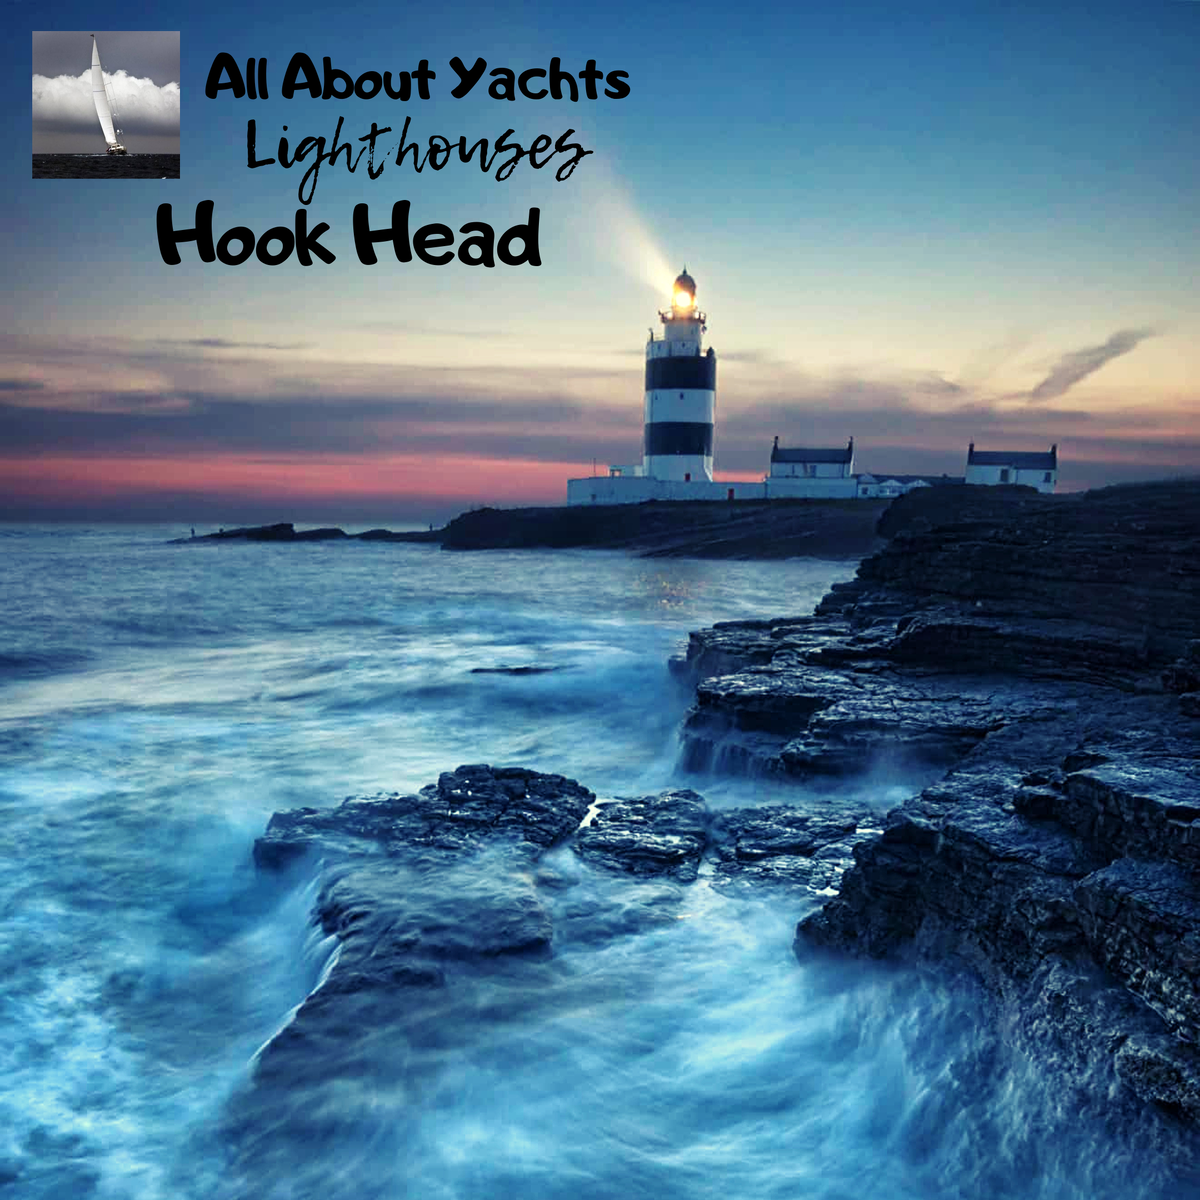 Маяк Hook Head один из самых старых действующих маяков в мире. Ему уже более 800 лет. Легенда гласит что в пятом веке один монах заметил, что около мыса часто происходят кораблекрушения.